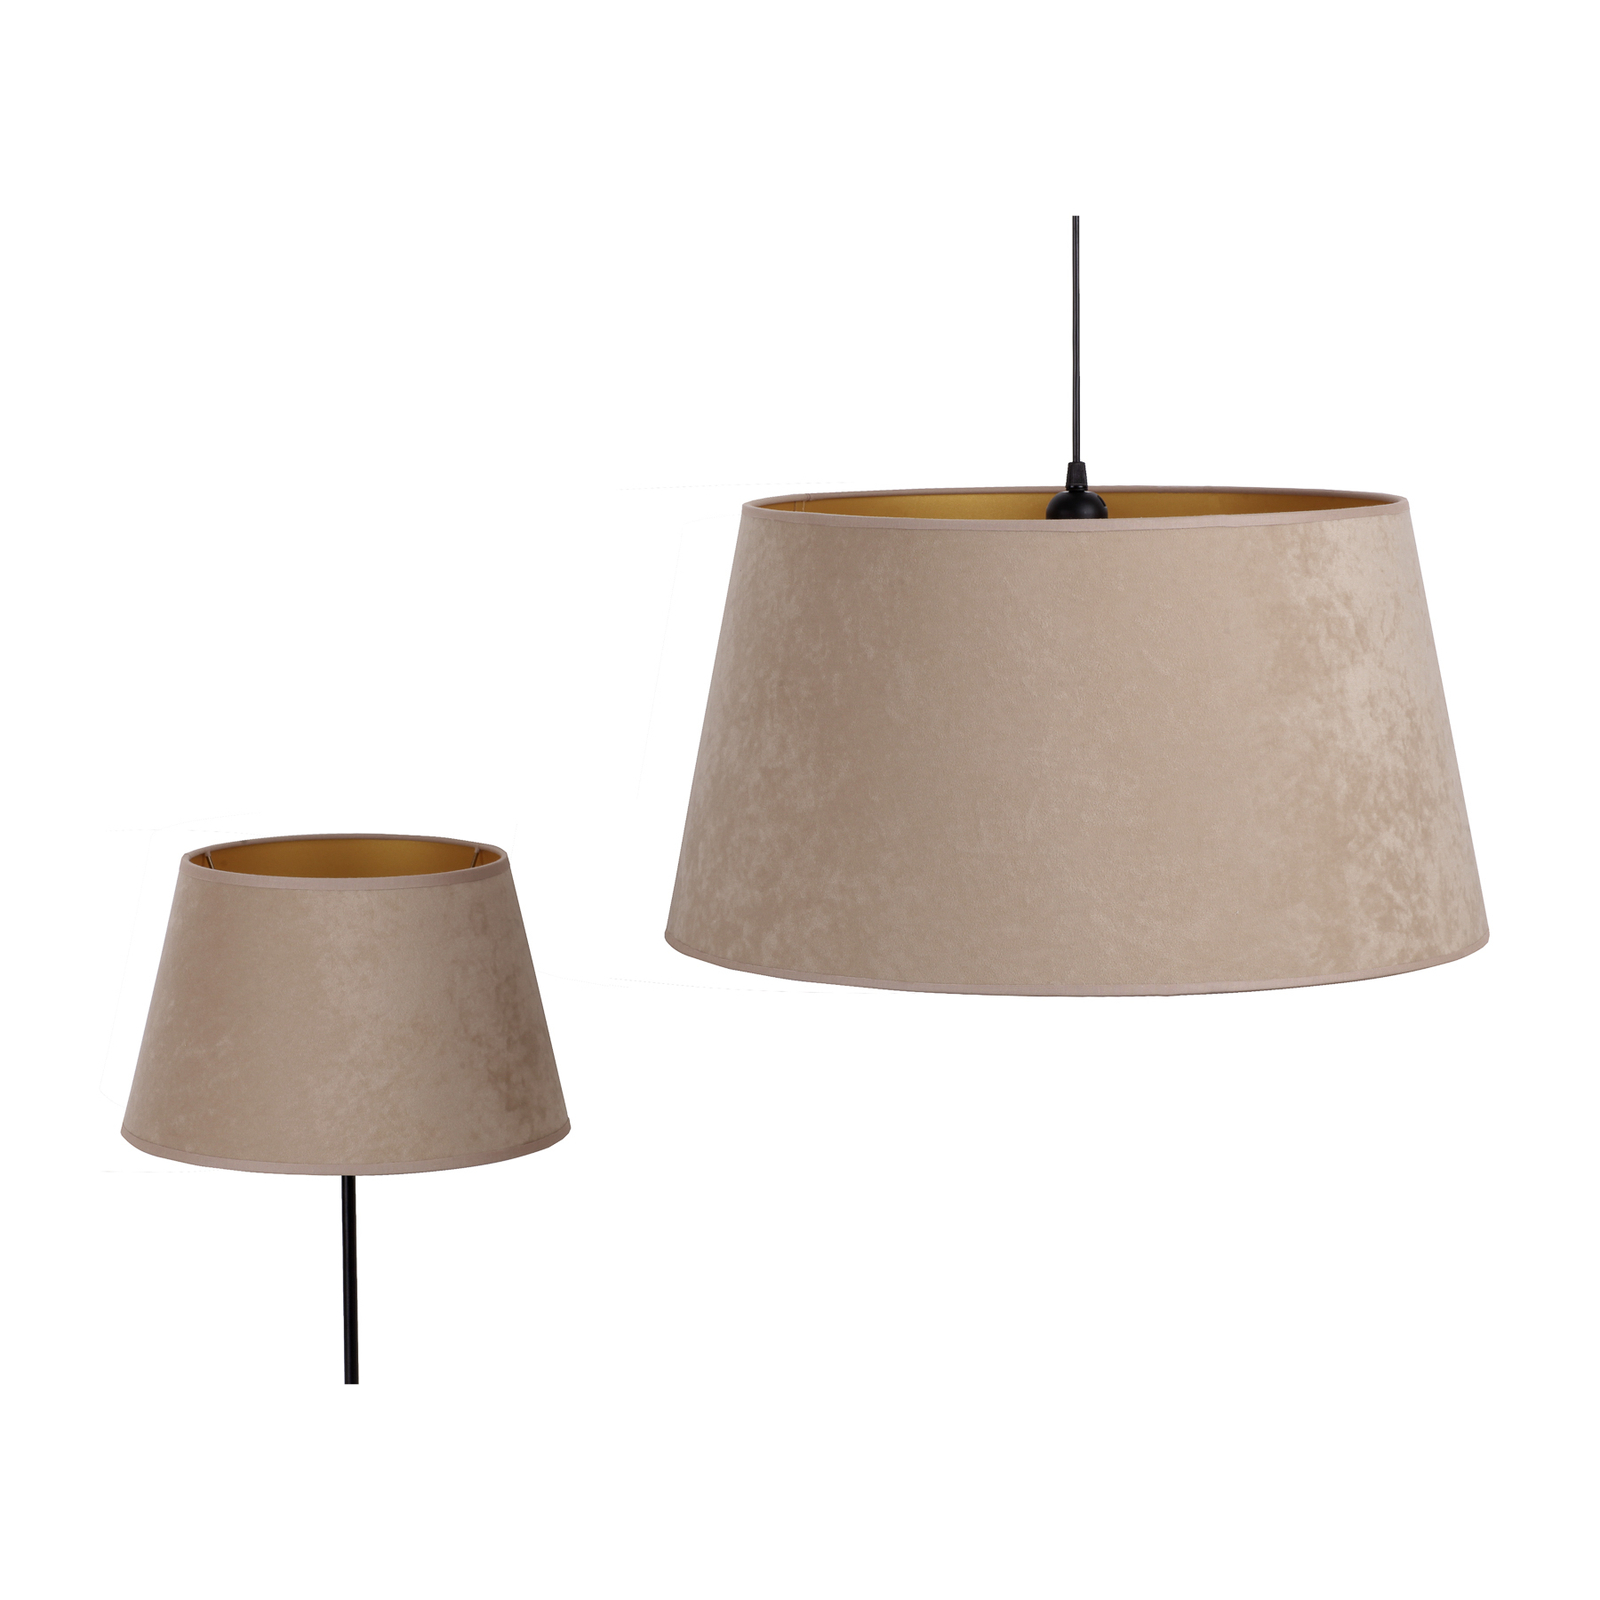 Cone lampeskærm, højde 18 cm, beige/guld